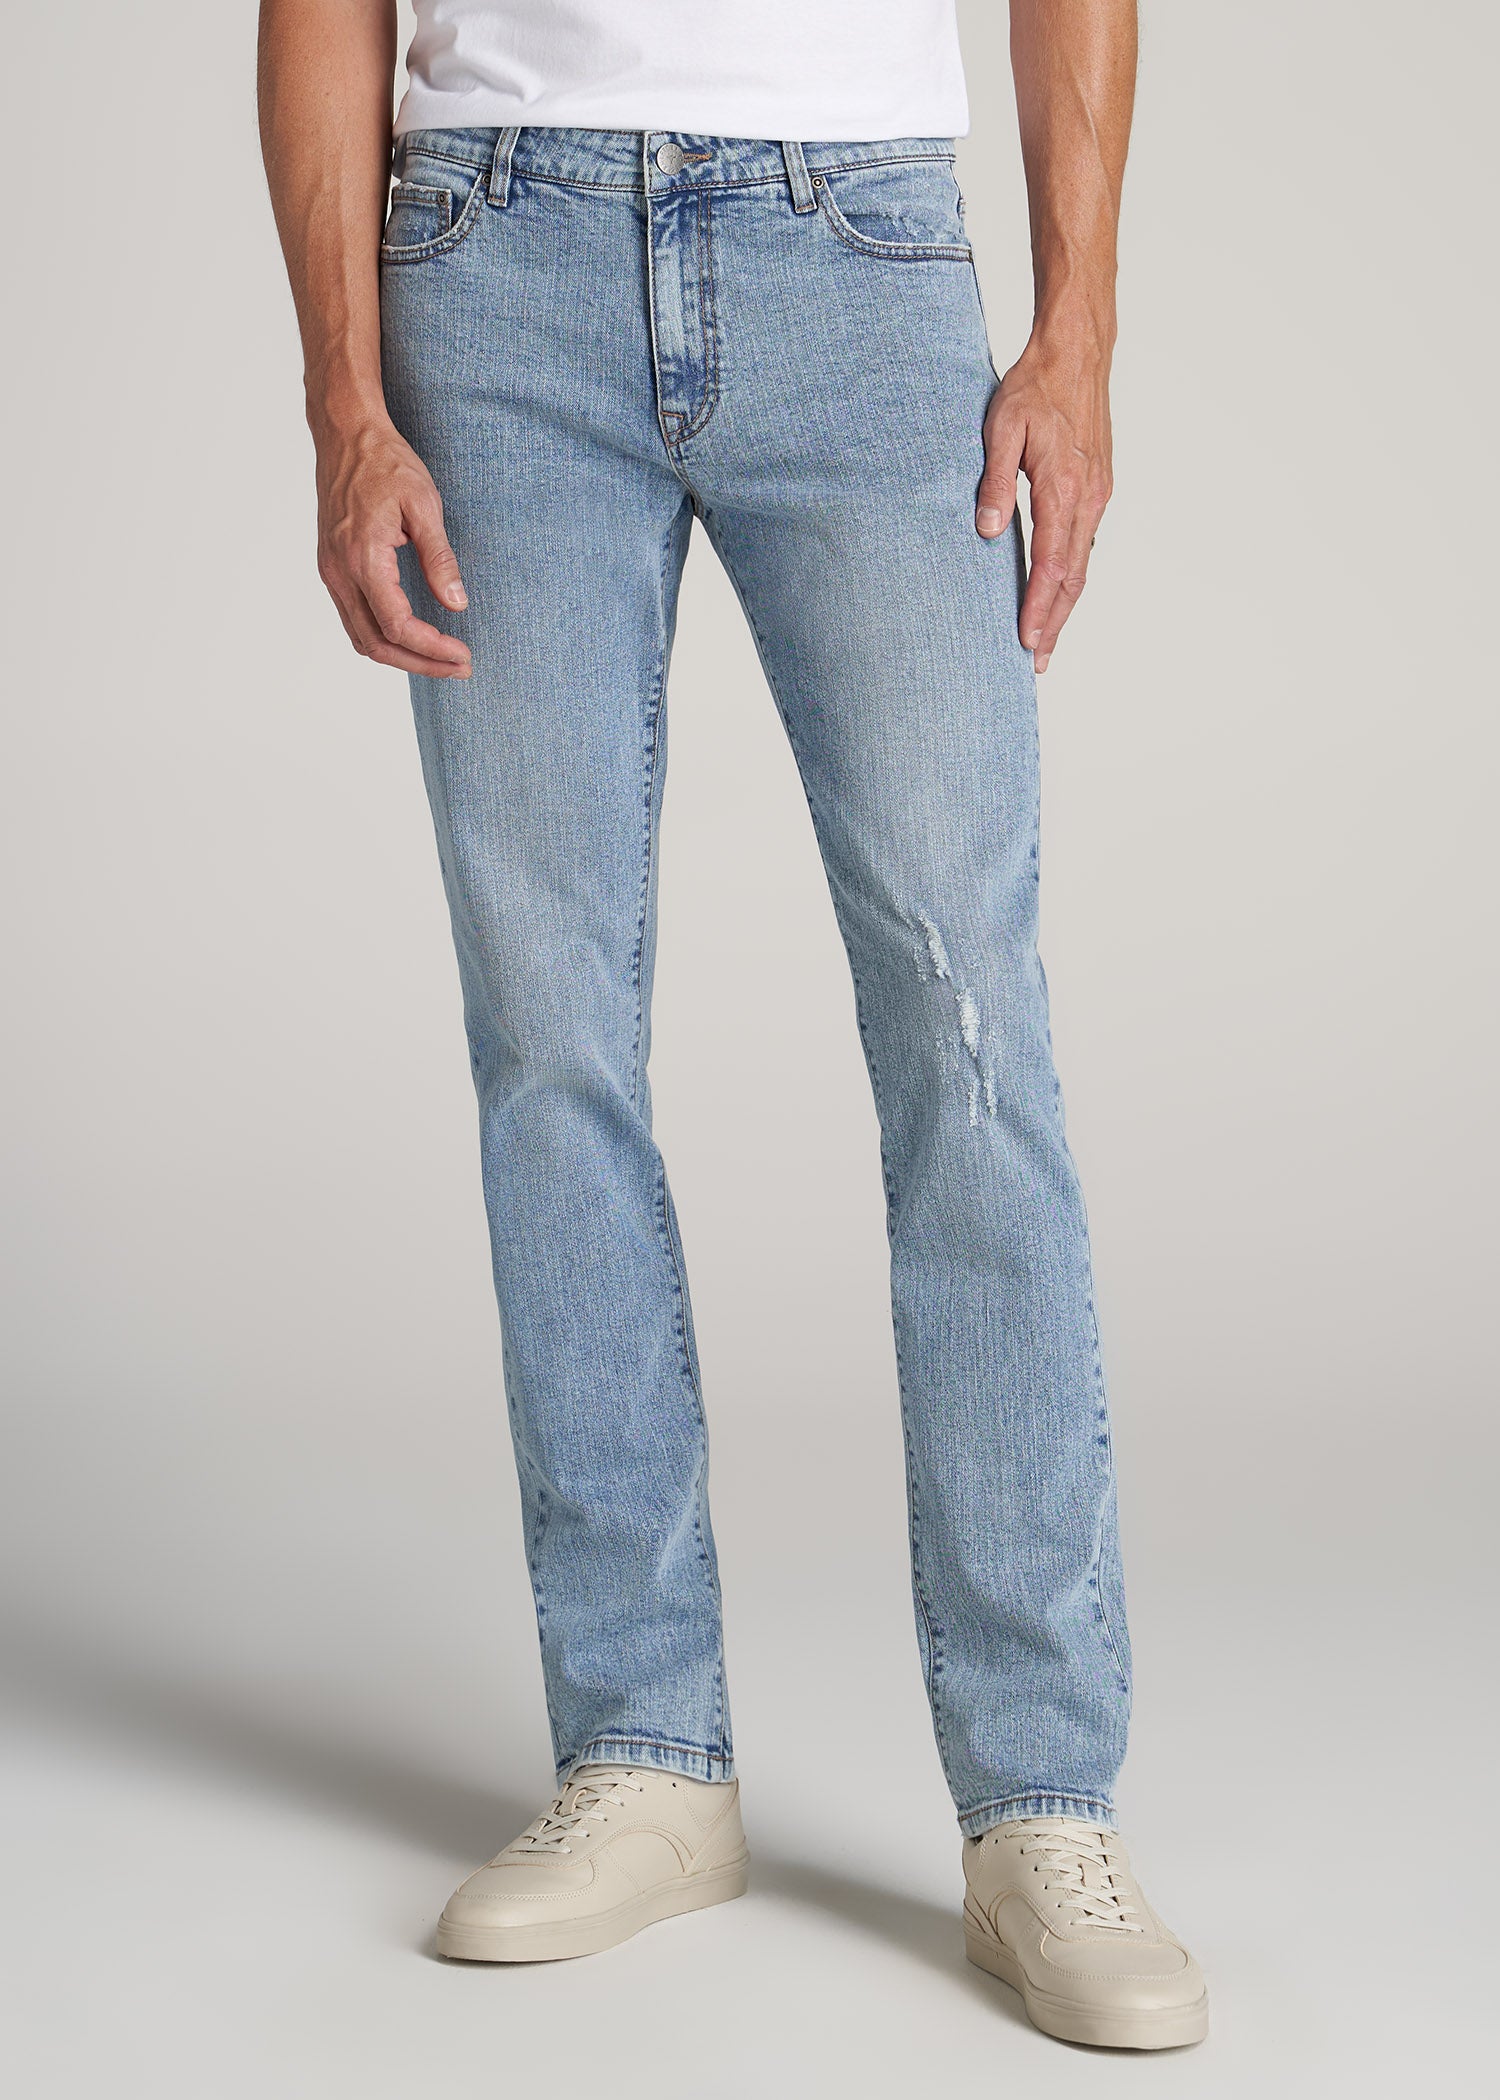 Dylan men's jeans regular fit regular waist straight leg black